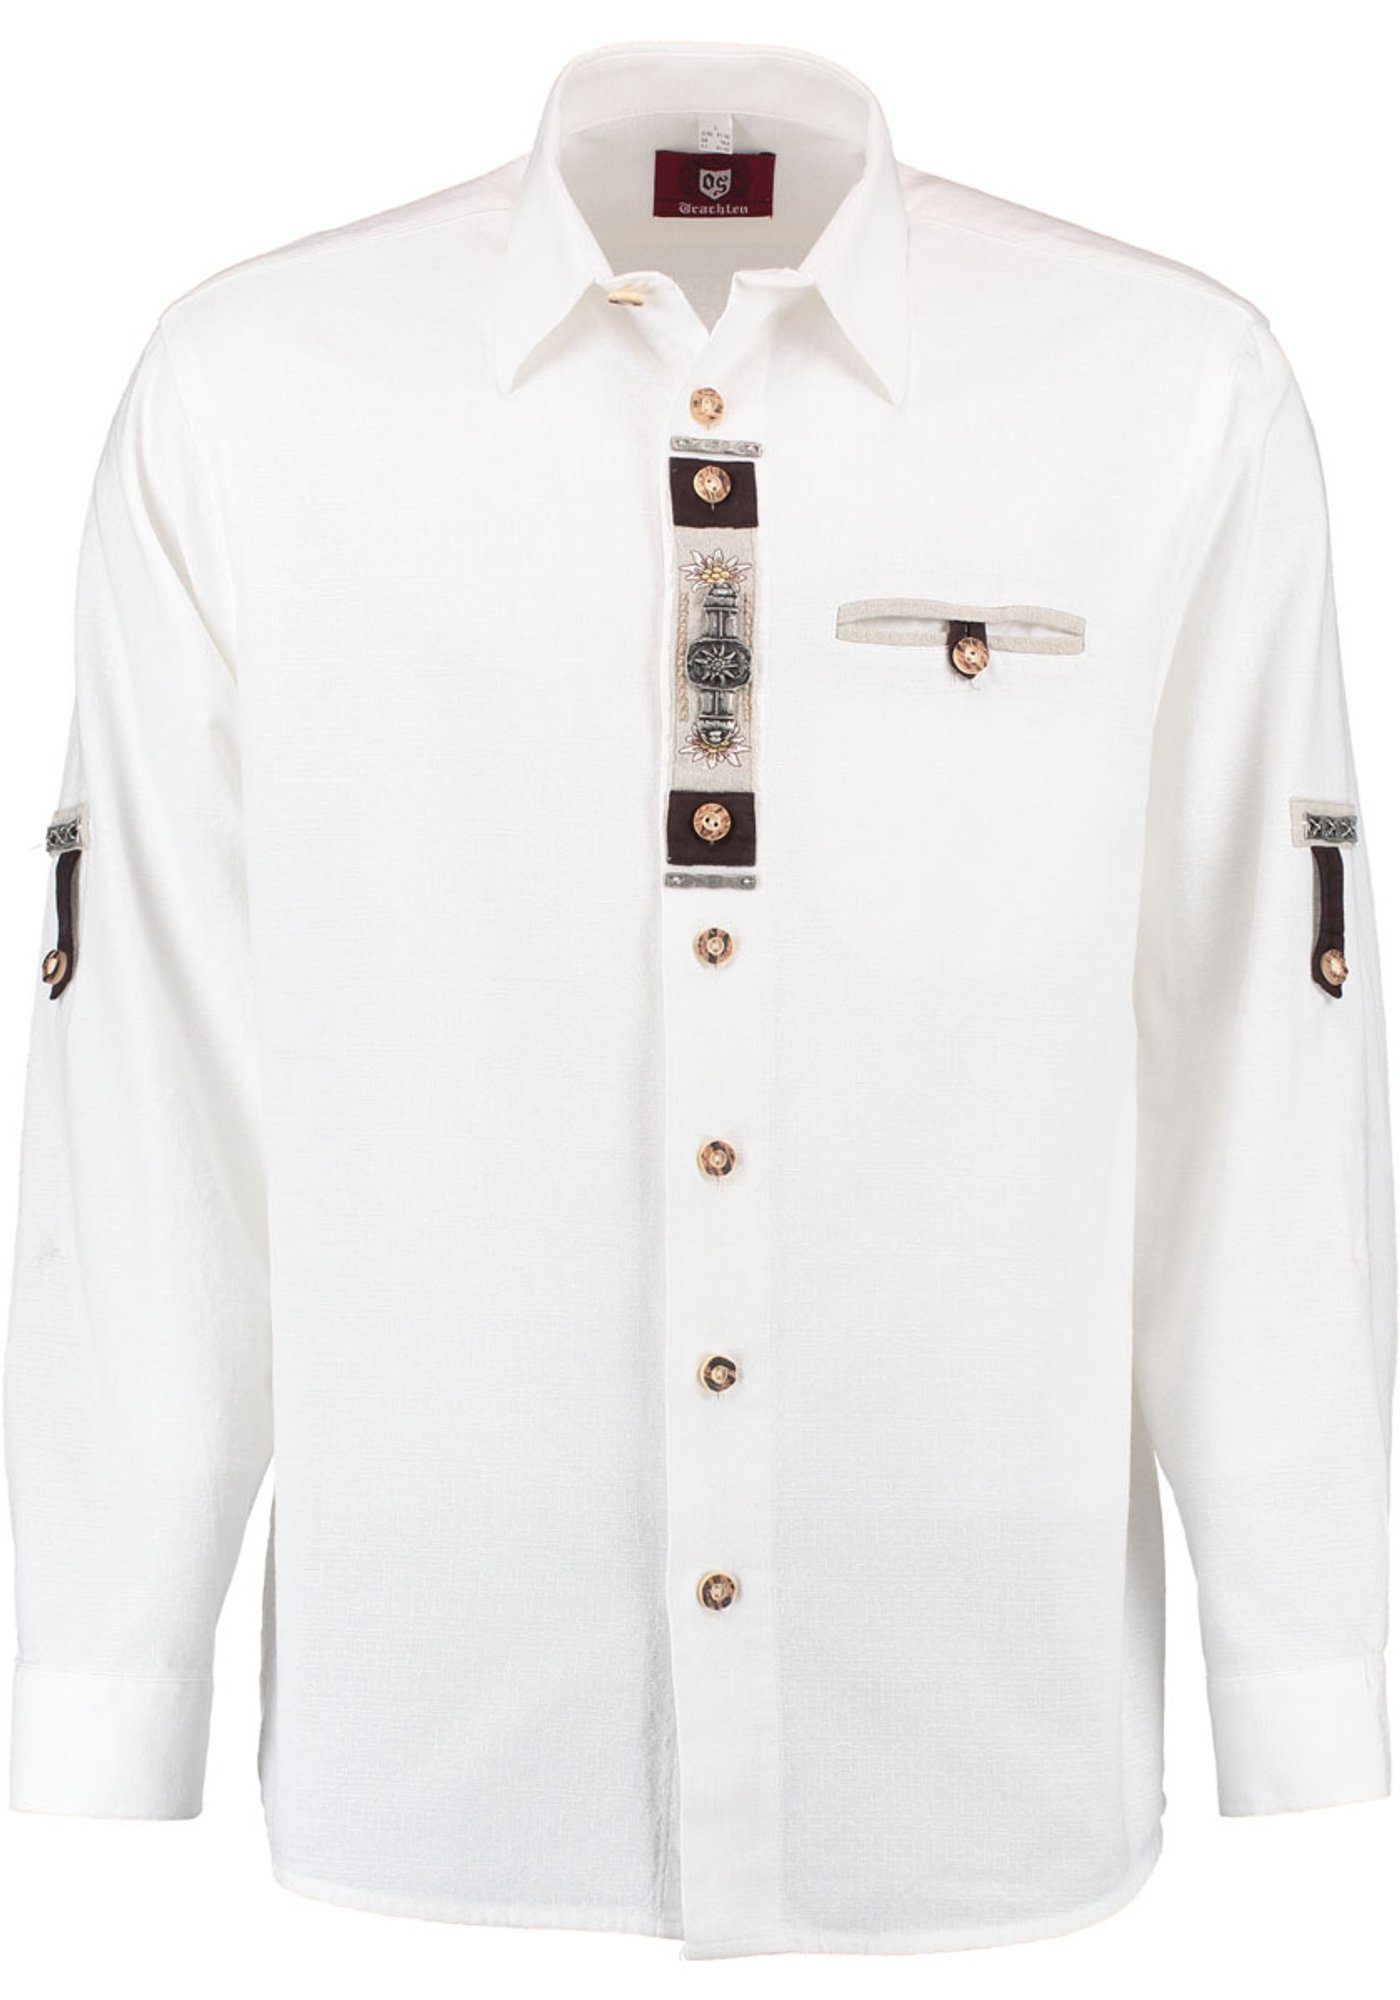 OS-Trachten Trachtenhemd Glexor Langarmhemd mit Edelweiß-Zierteile auf der Knopfleiste